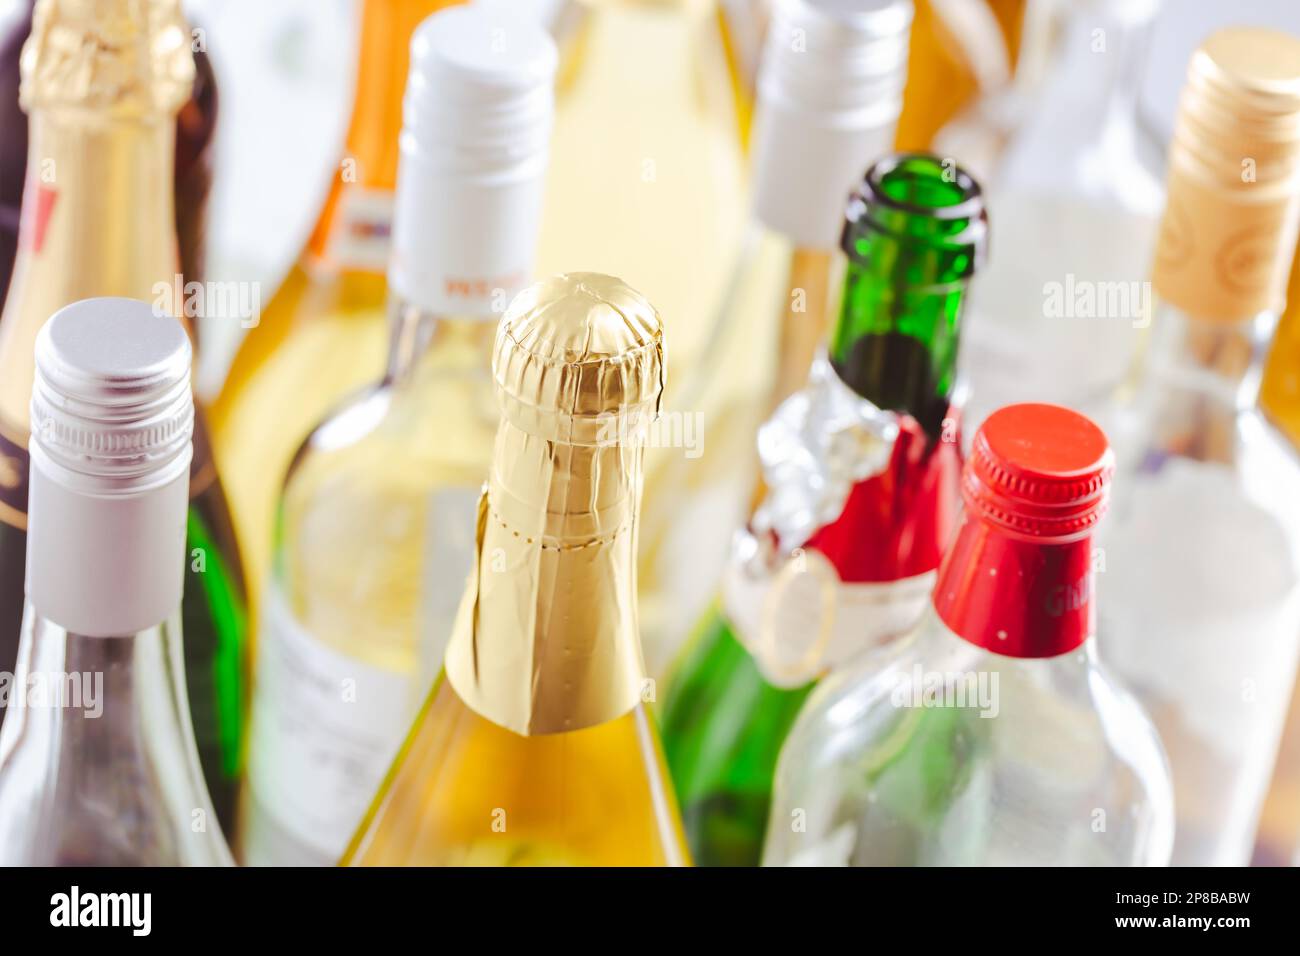 Volle und leere Flaschen verschiedener alkoholischer Getränke, Missbrauch und Alkoholabhängigkeit. Alkoholismusbegriff. Stockfoto